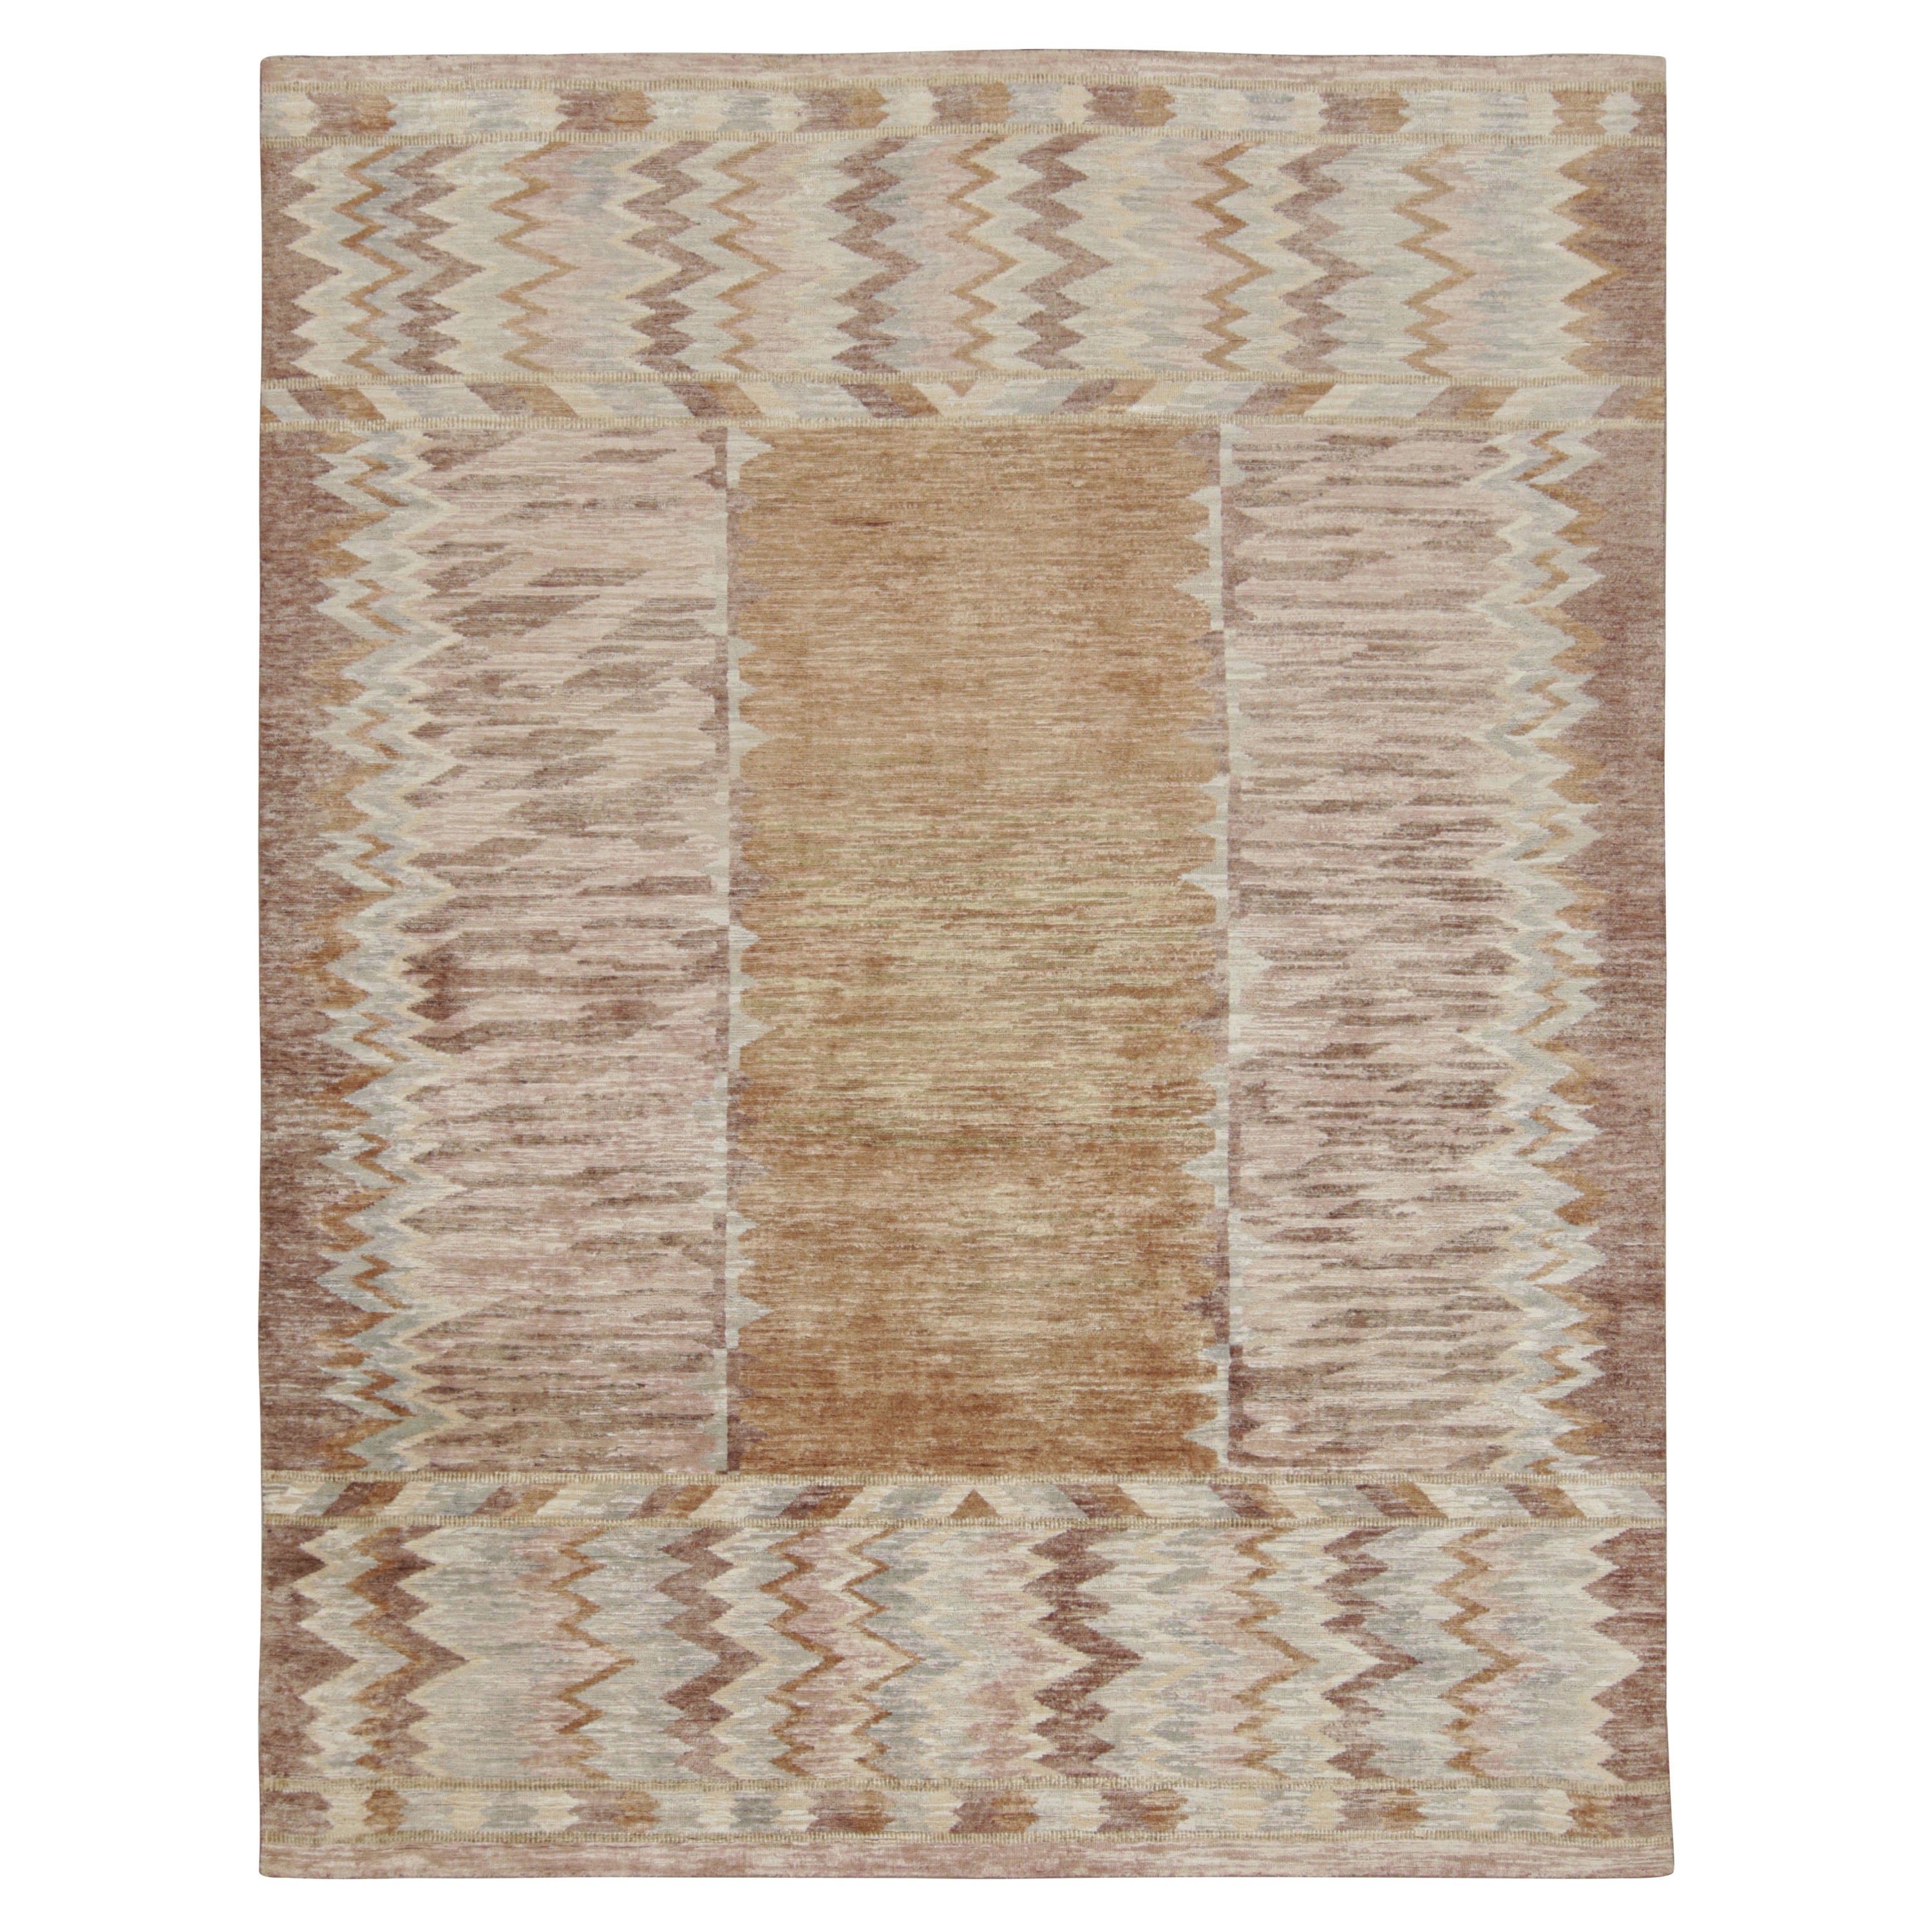 Rug & Kilim's Teppich im skandinavischen Stil mit geometrischen Chevron-Mustern